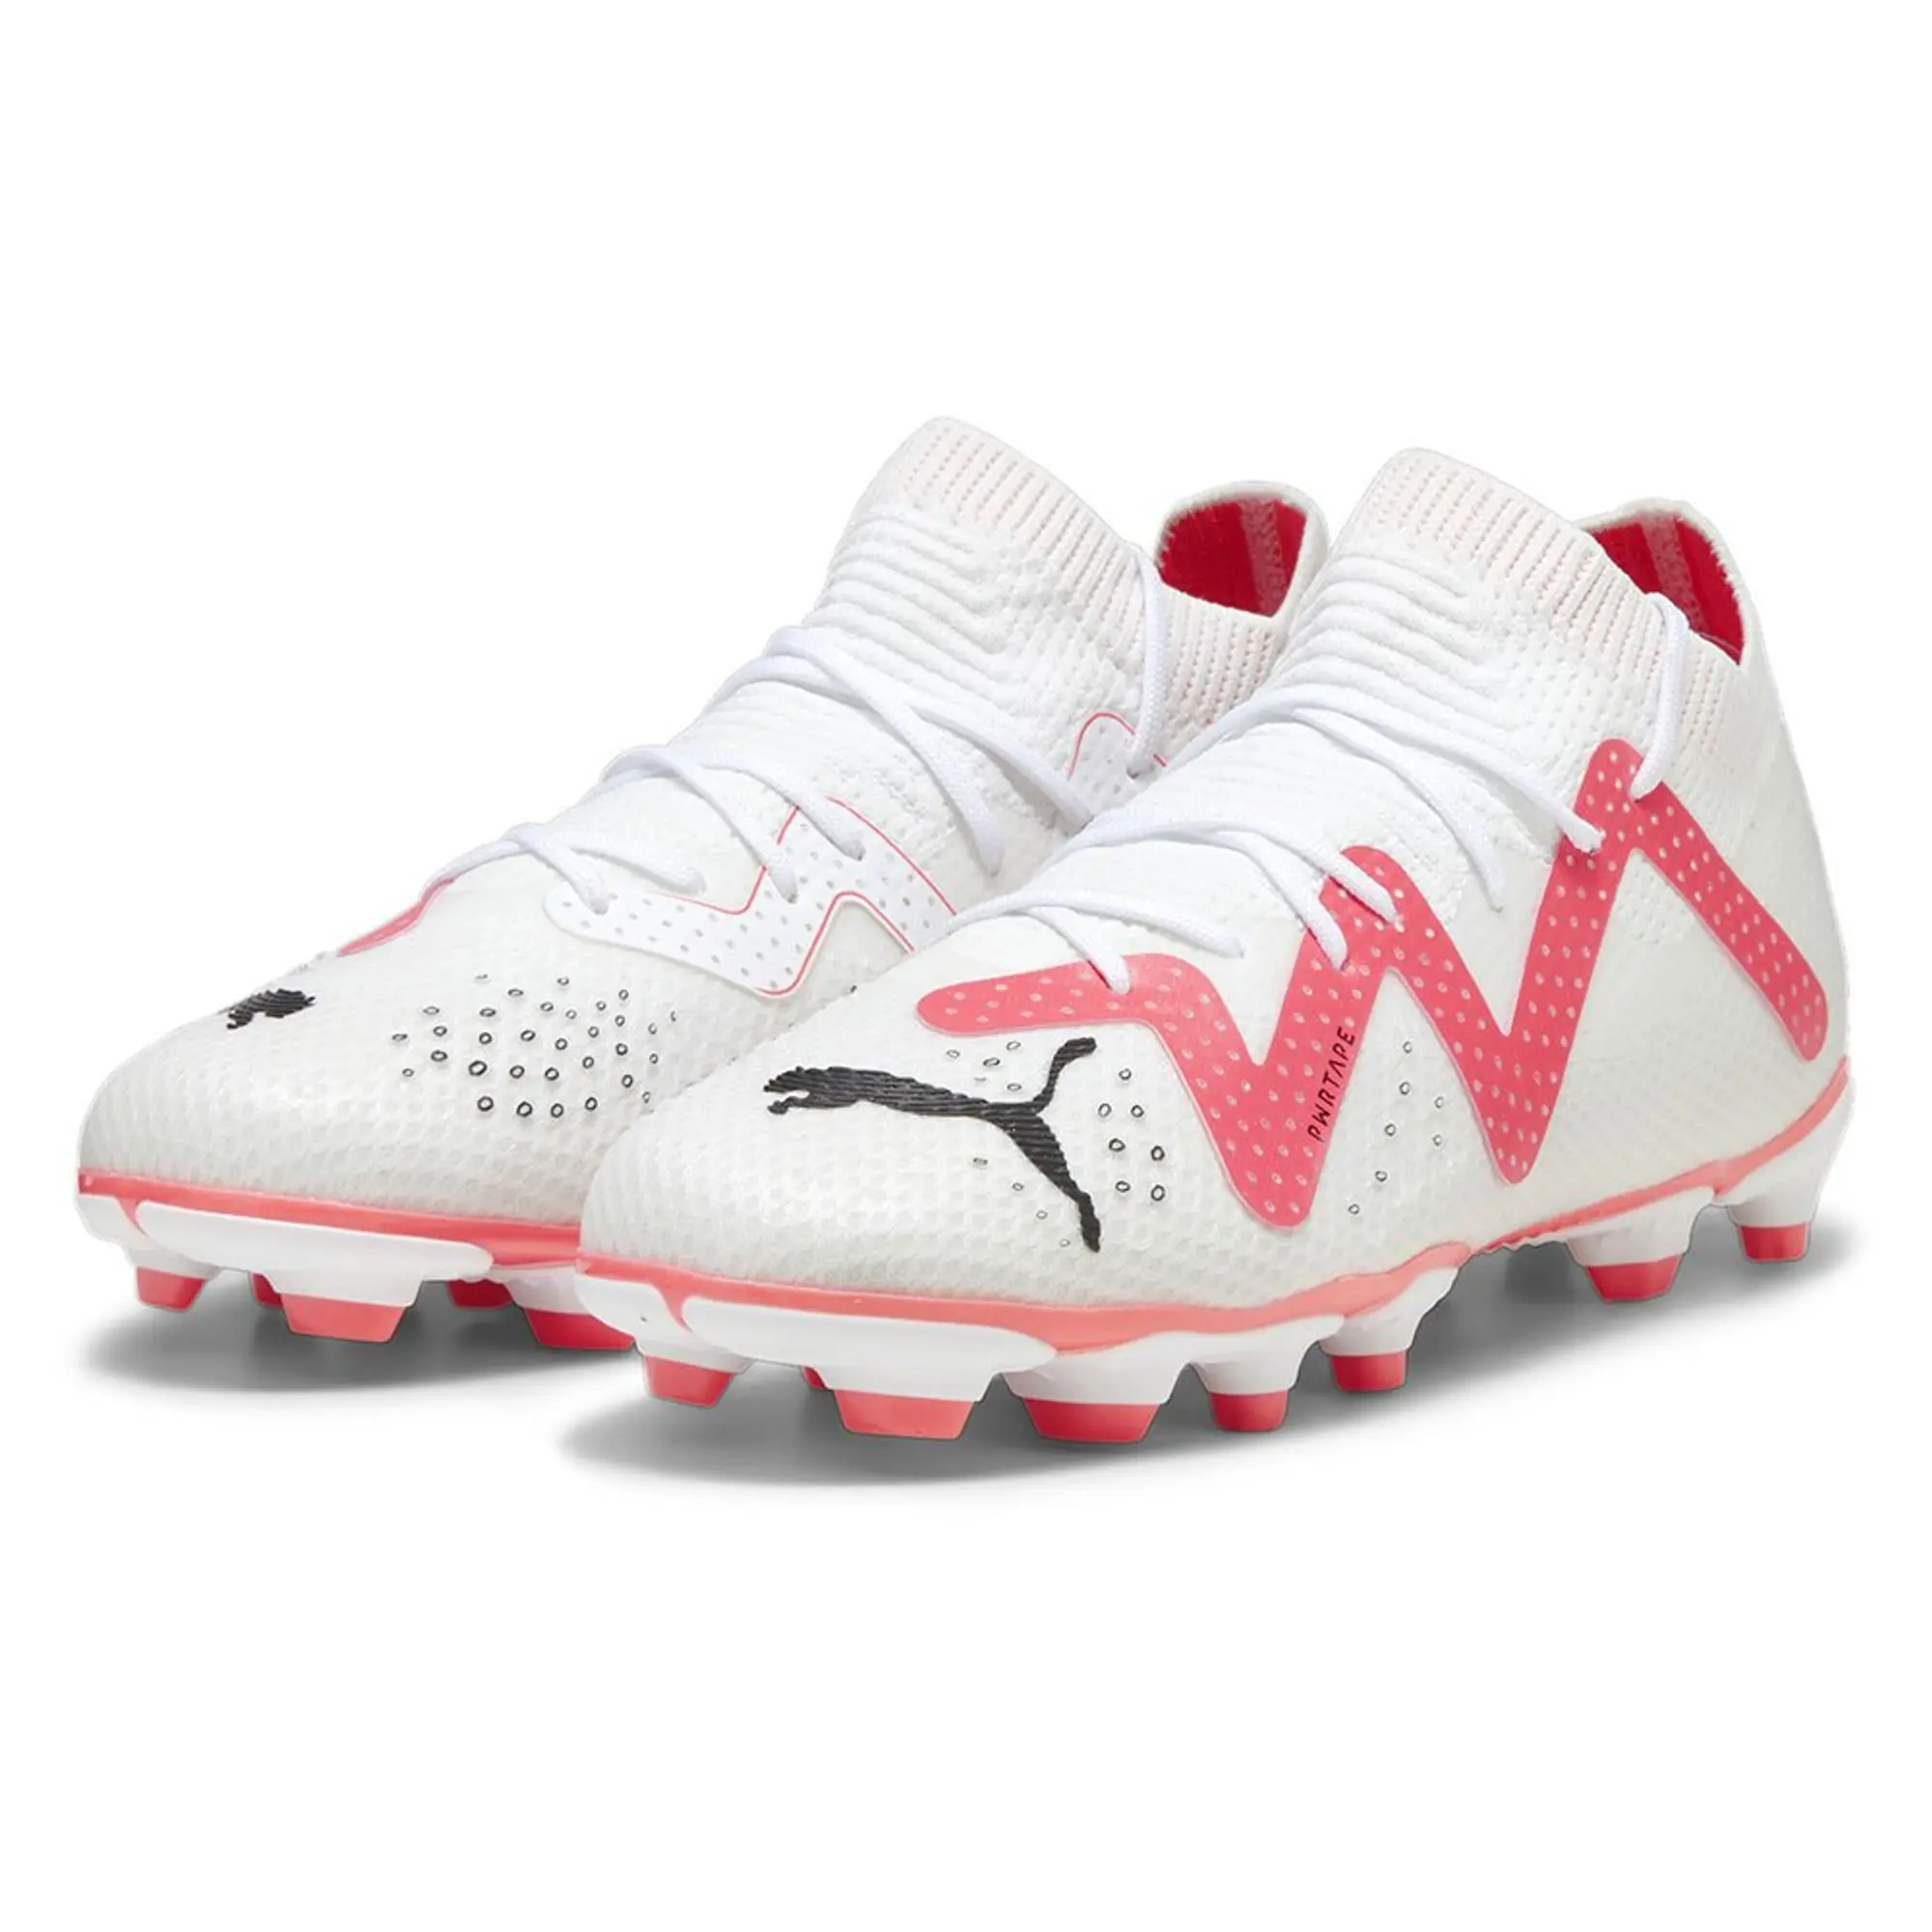 Puma Future Pro Fg/ag Football Boots  - White